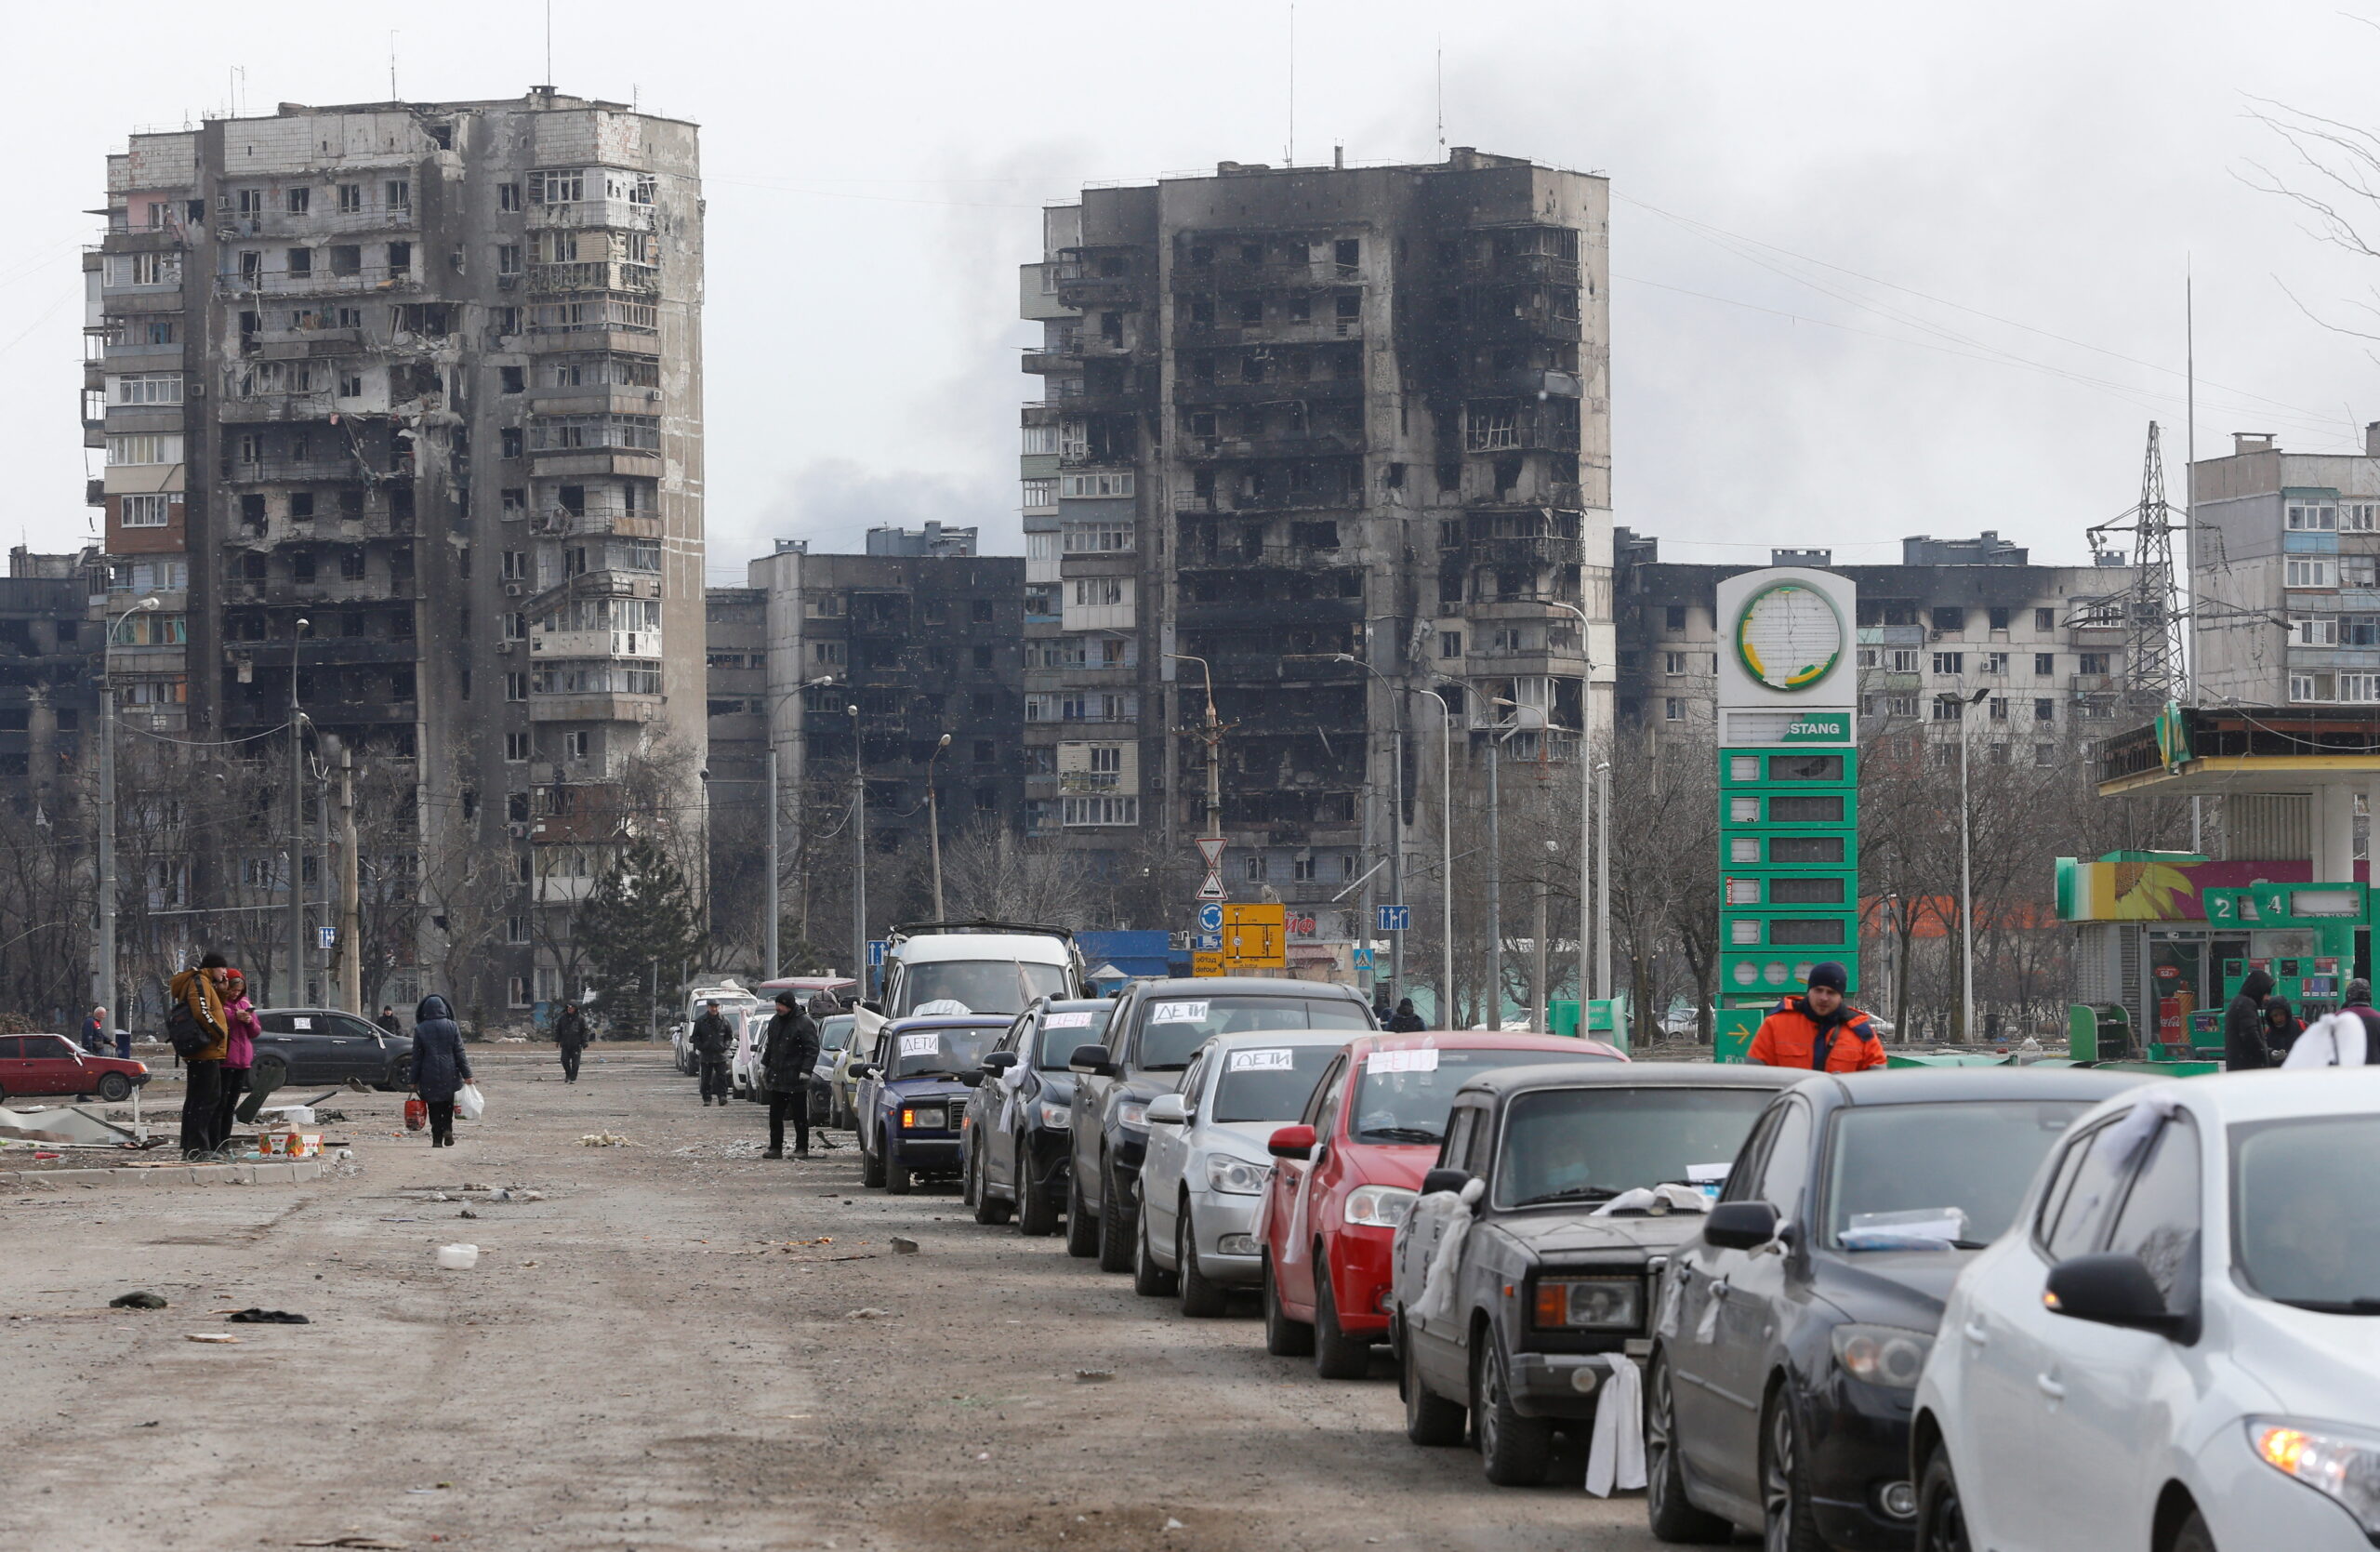 Вереницв автомобилей, покидающих город, в микрорайоне, разрушенном во время обстрелов. Мариуполь, Украина, 17 марта 2022 года. © REUTERS / Alexander Ermochenko / Scanpix / Leta